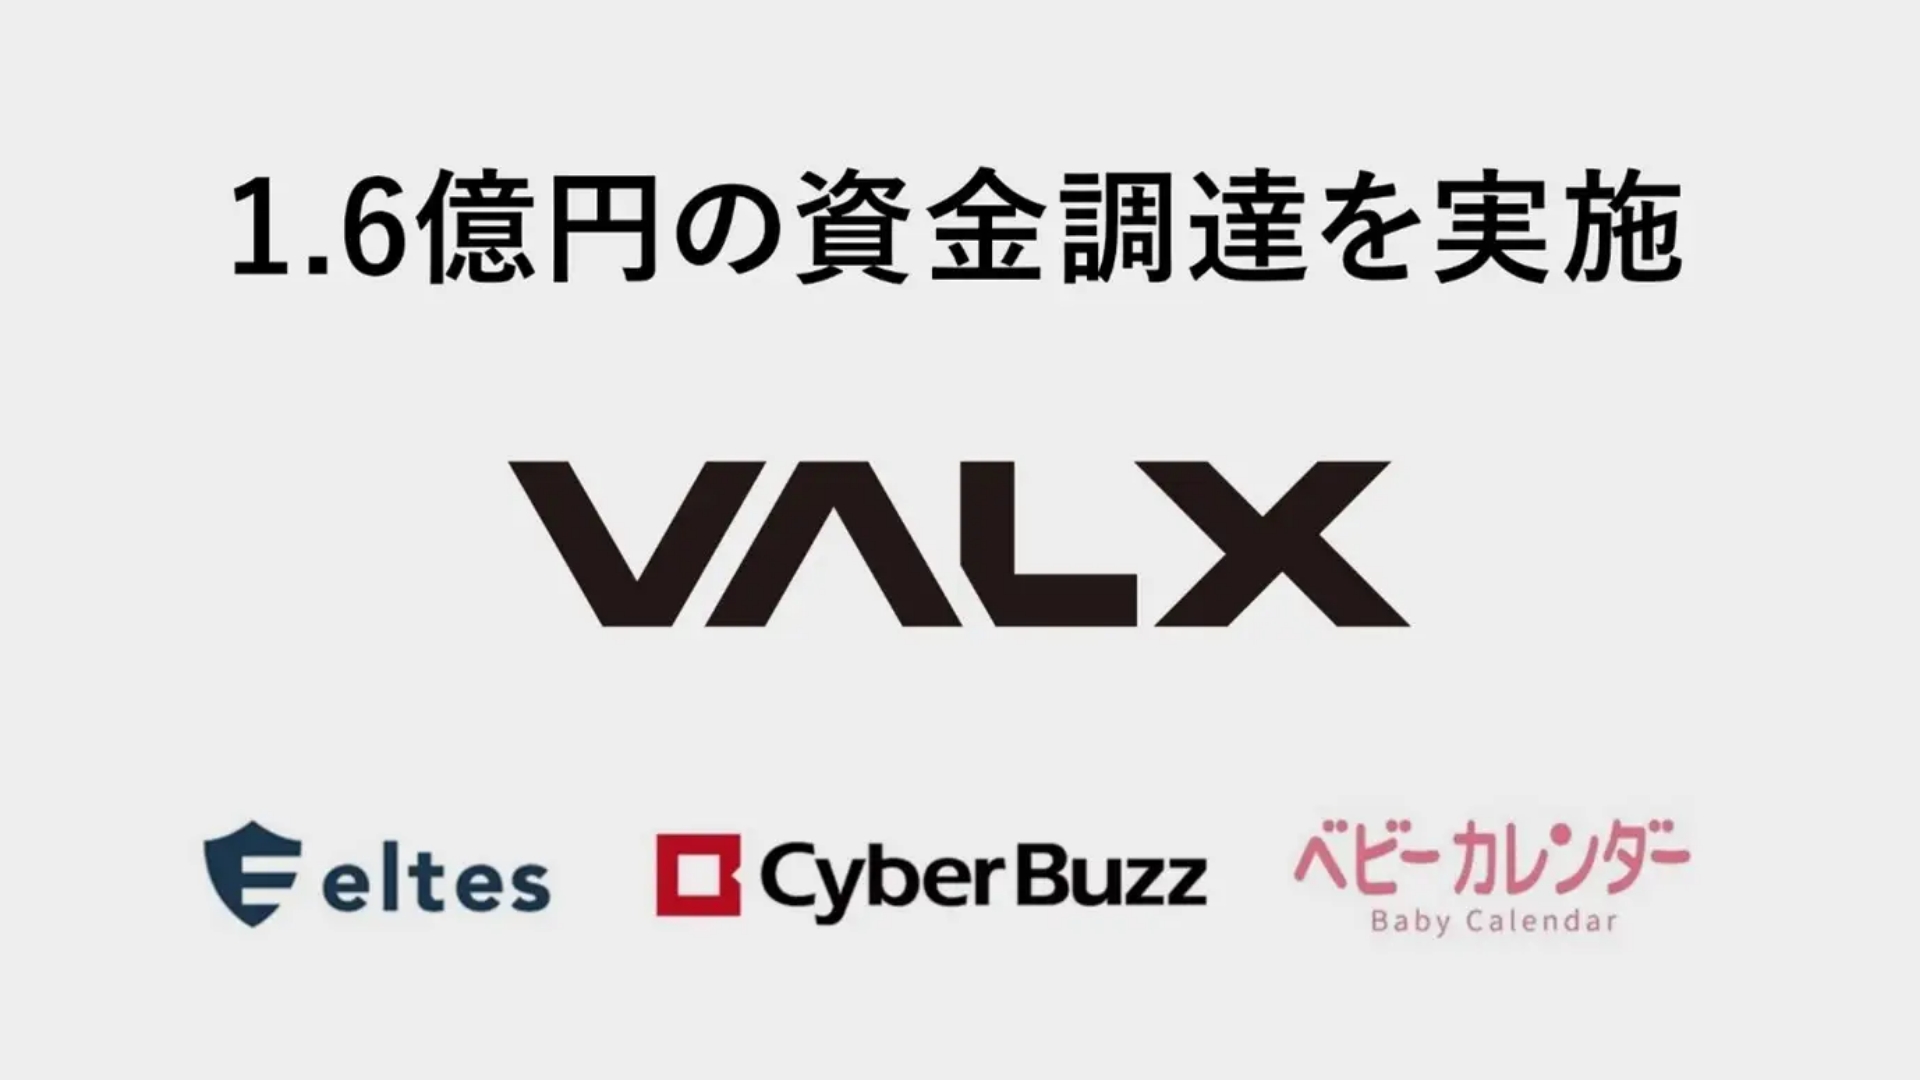 フィットネスブランド「VALX（バルクス）」を展開する株式会社レバレッジが1.6億円の資金調達